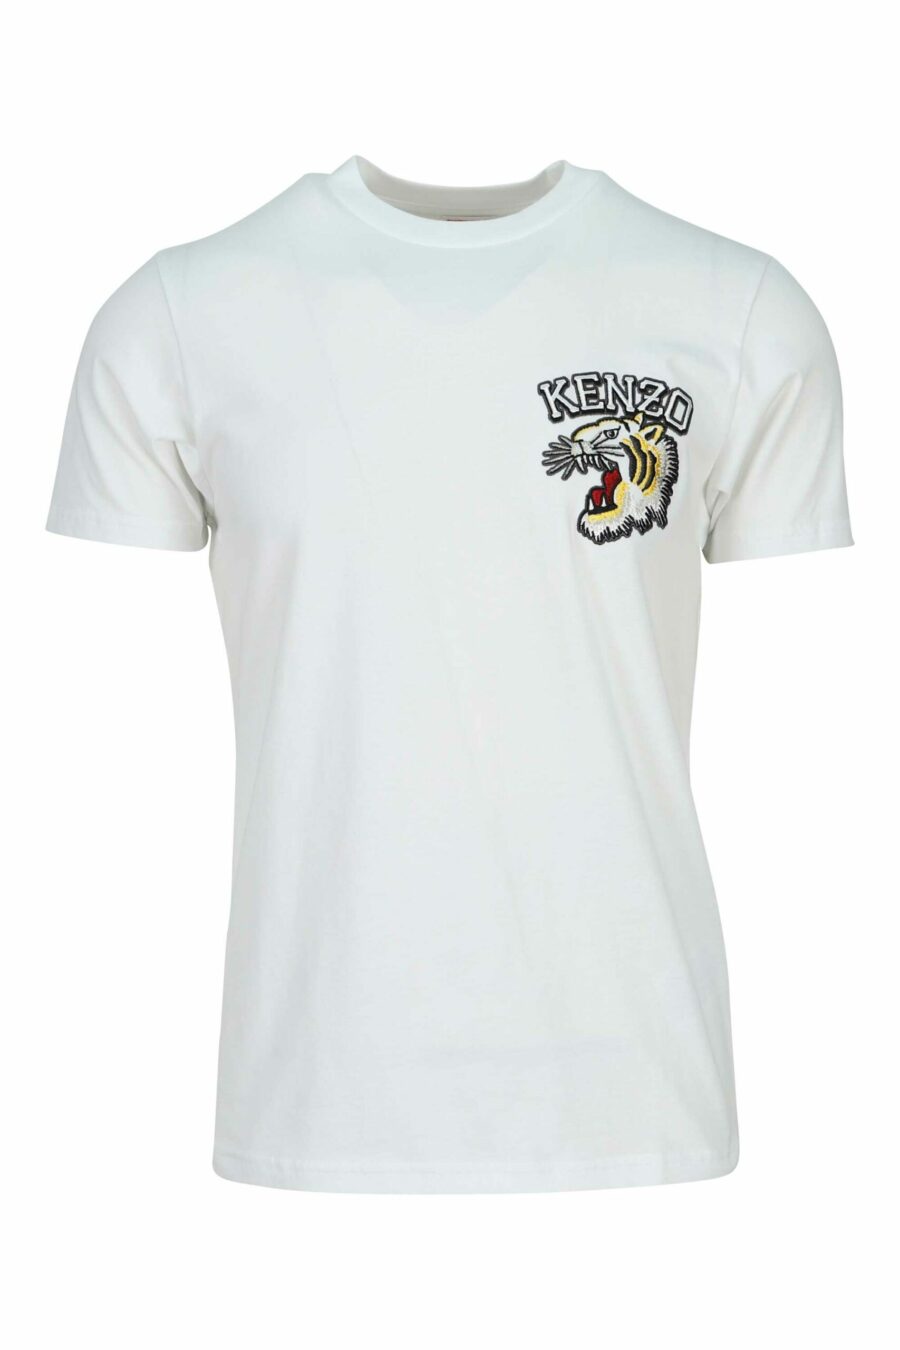 T-shirt blanc "slim" avec logo tigre mini - 3612230625013